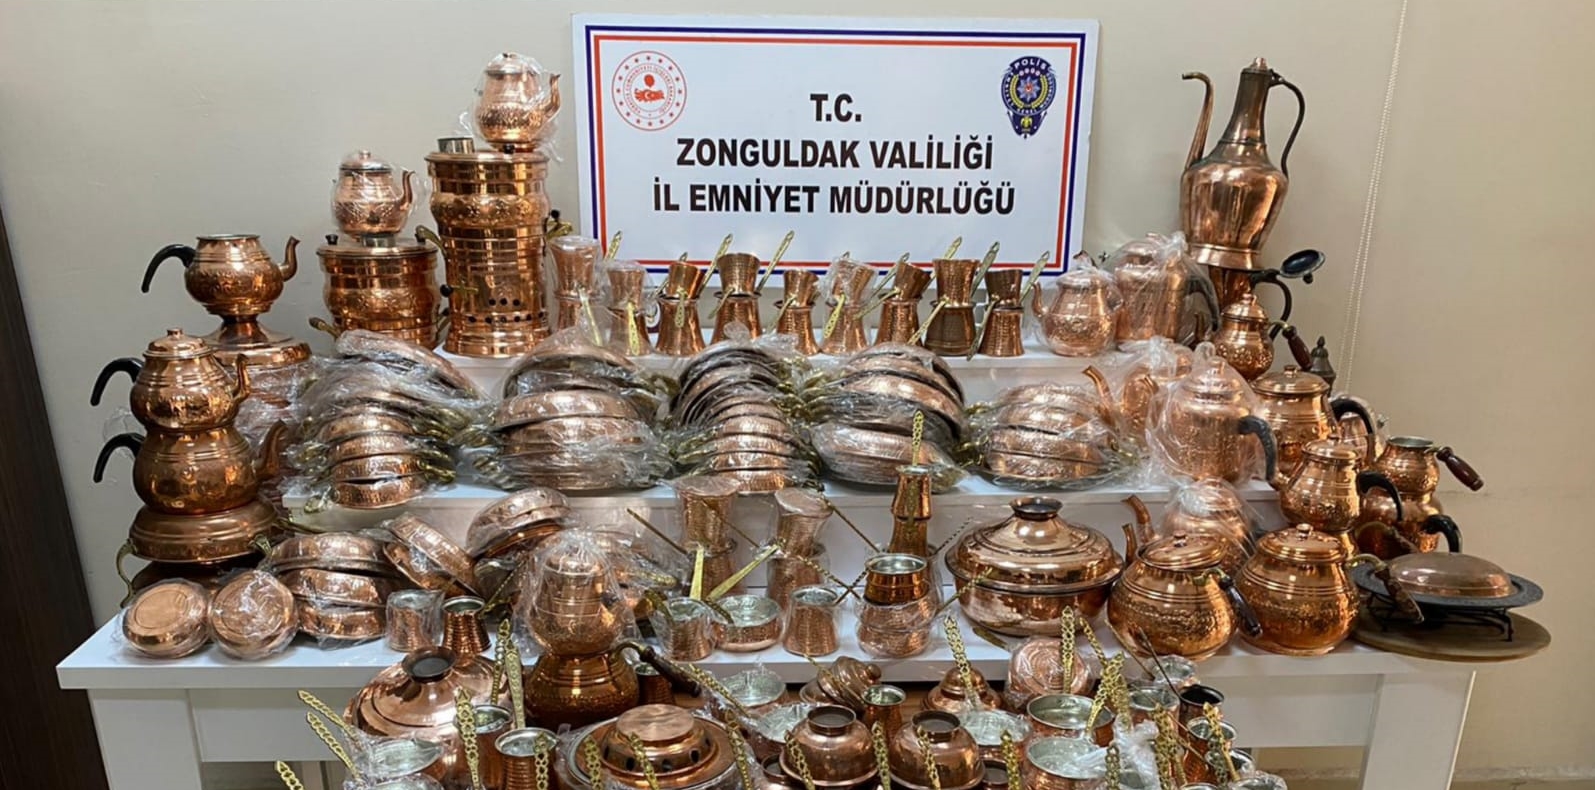 Zonguldak’ta iki hırsızlık şüphelisi tutuklandı